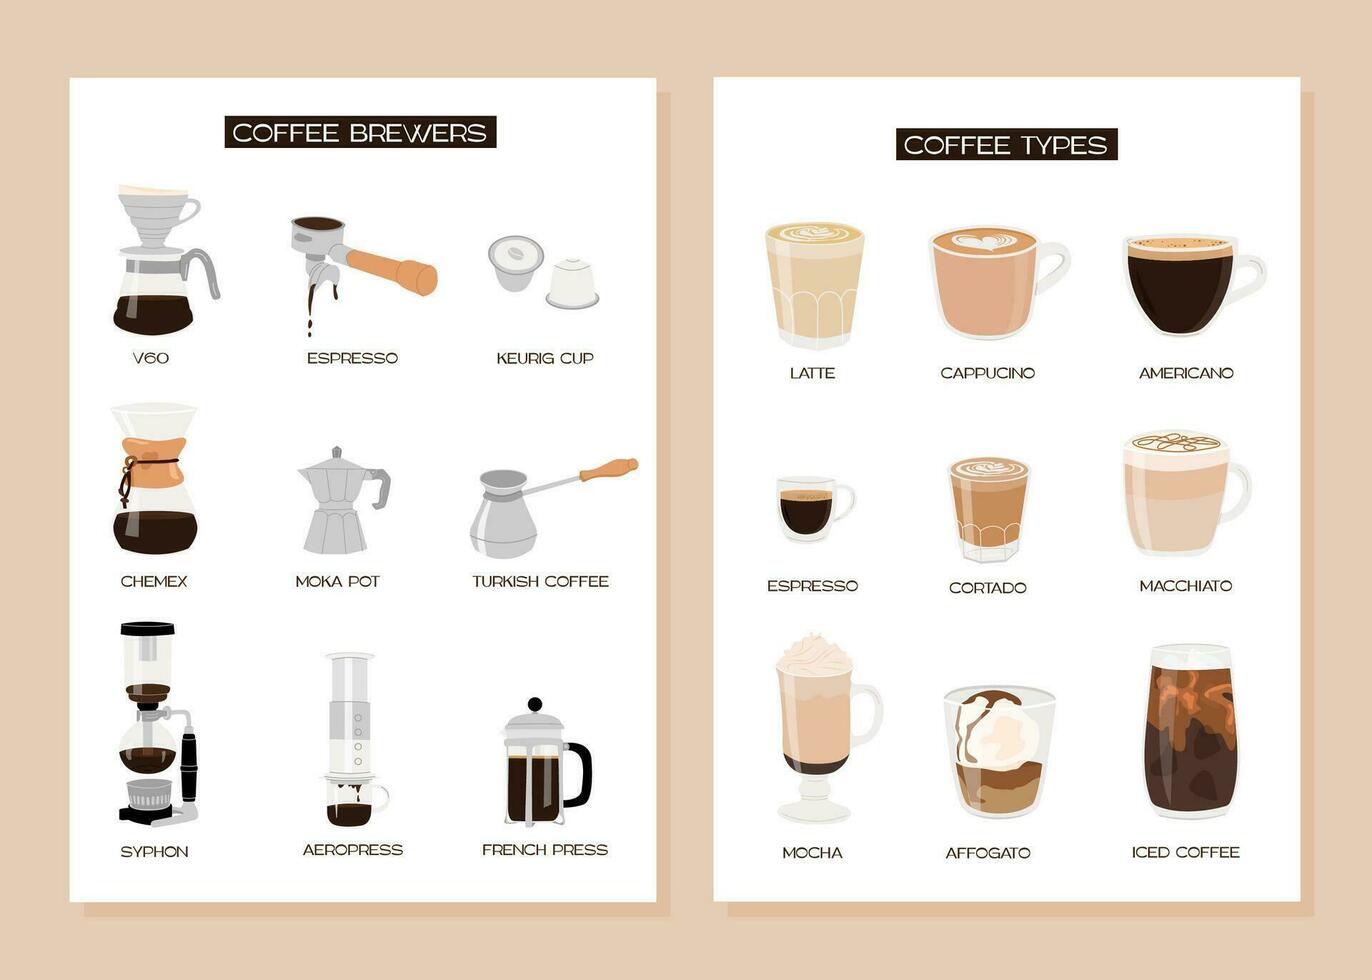 reeks van infographic verticaal poster met verschillend soort van koffie en brouwen methoden. verzameling van divers koffie makers. koffie soorten. muur kunst modern minimalistisch afdrukken. vector vlak illustratie.